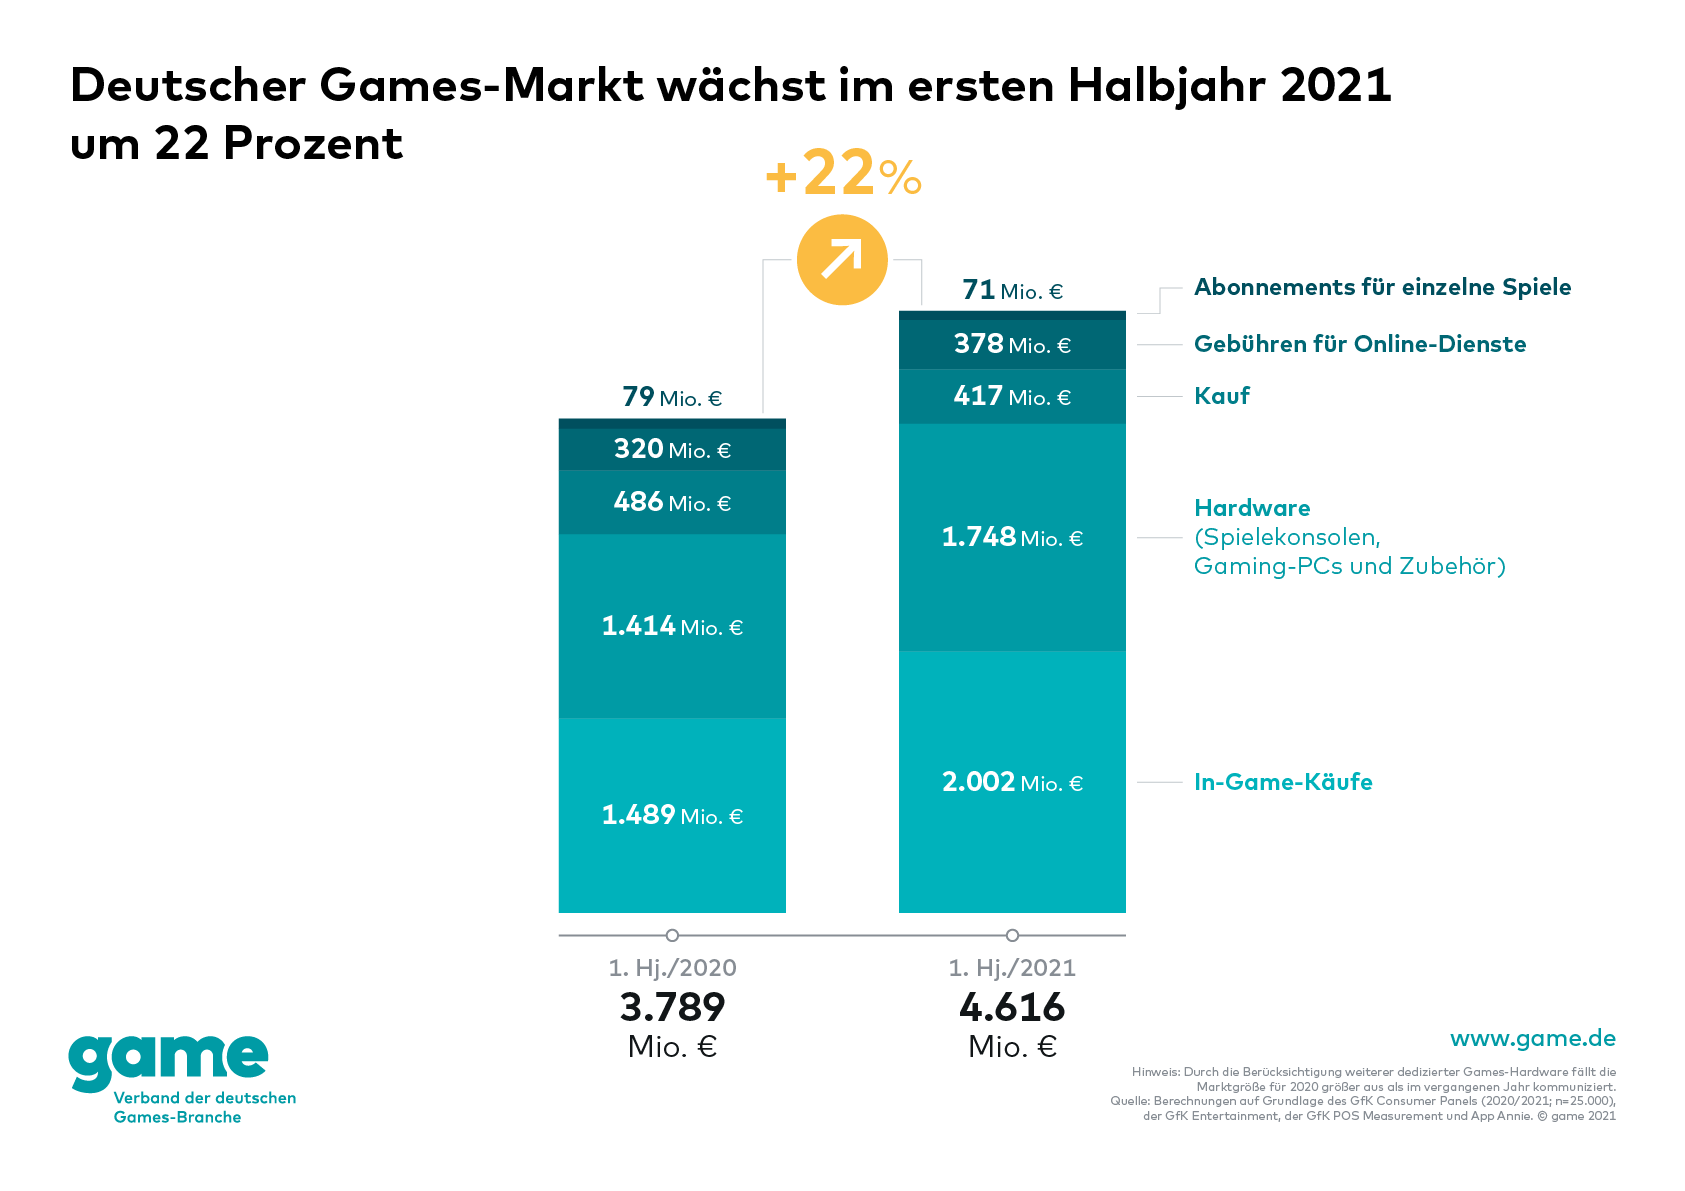 Deutscher Games-Markt erstes Halbjahr 2021